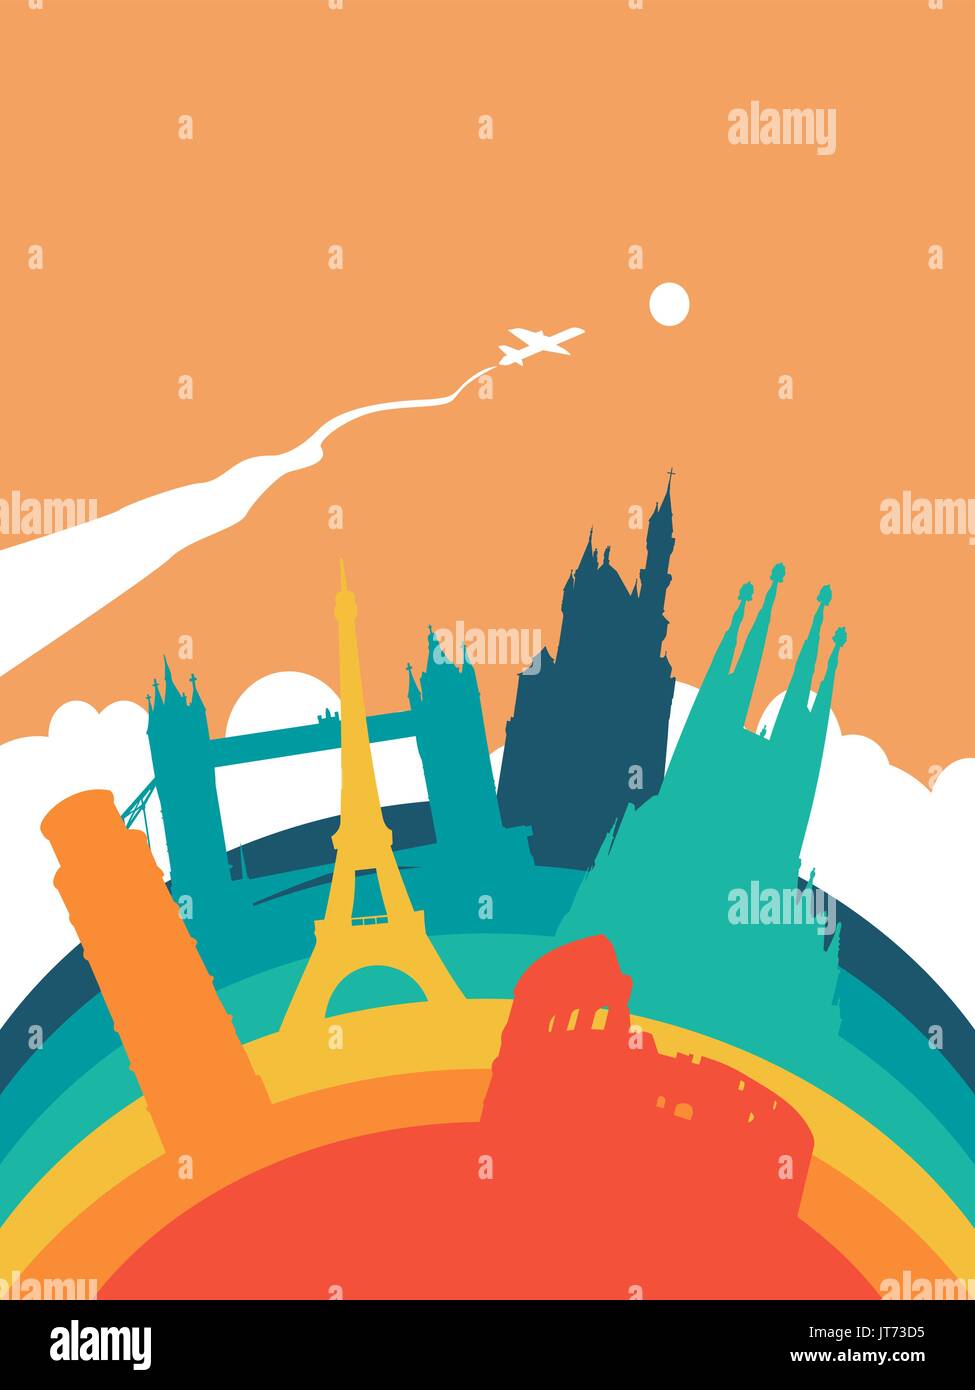 Billet d'Europe illustration paysage, European world landmarks. Comprend la tour Eiffel, le pont de Londres, Rome colisée. Vecteur EPS10. Illustration de Vecteur